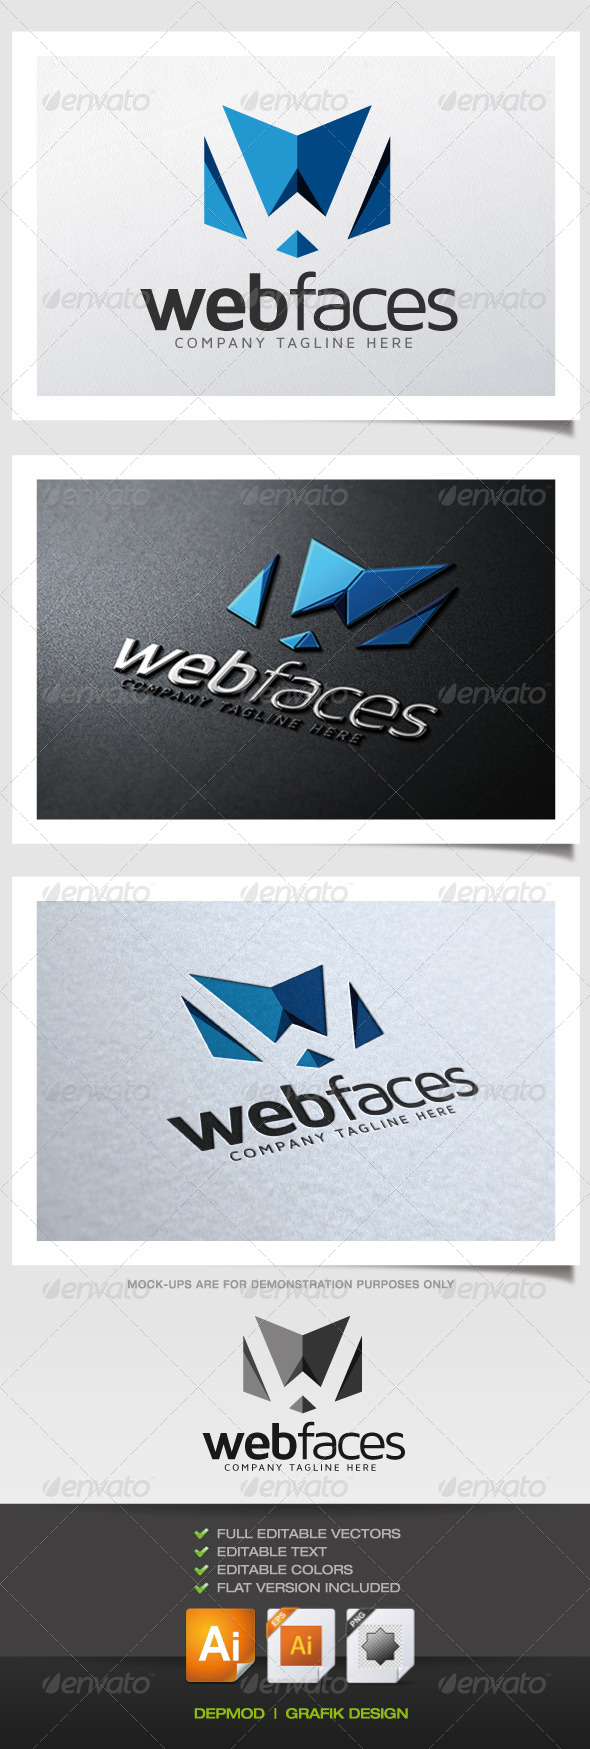 Web Faces Logo